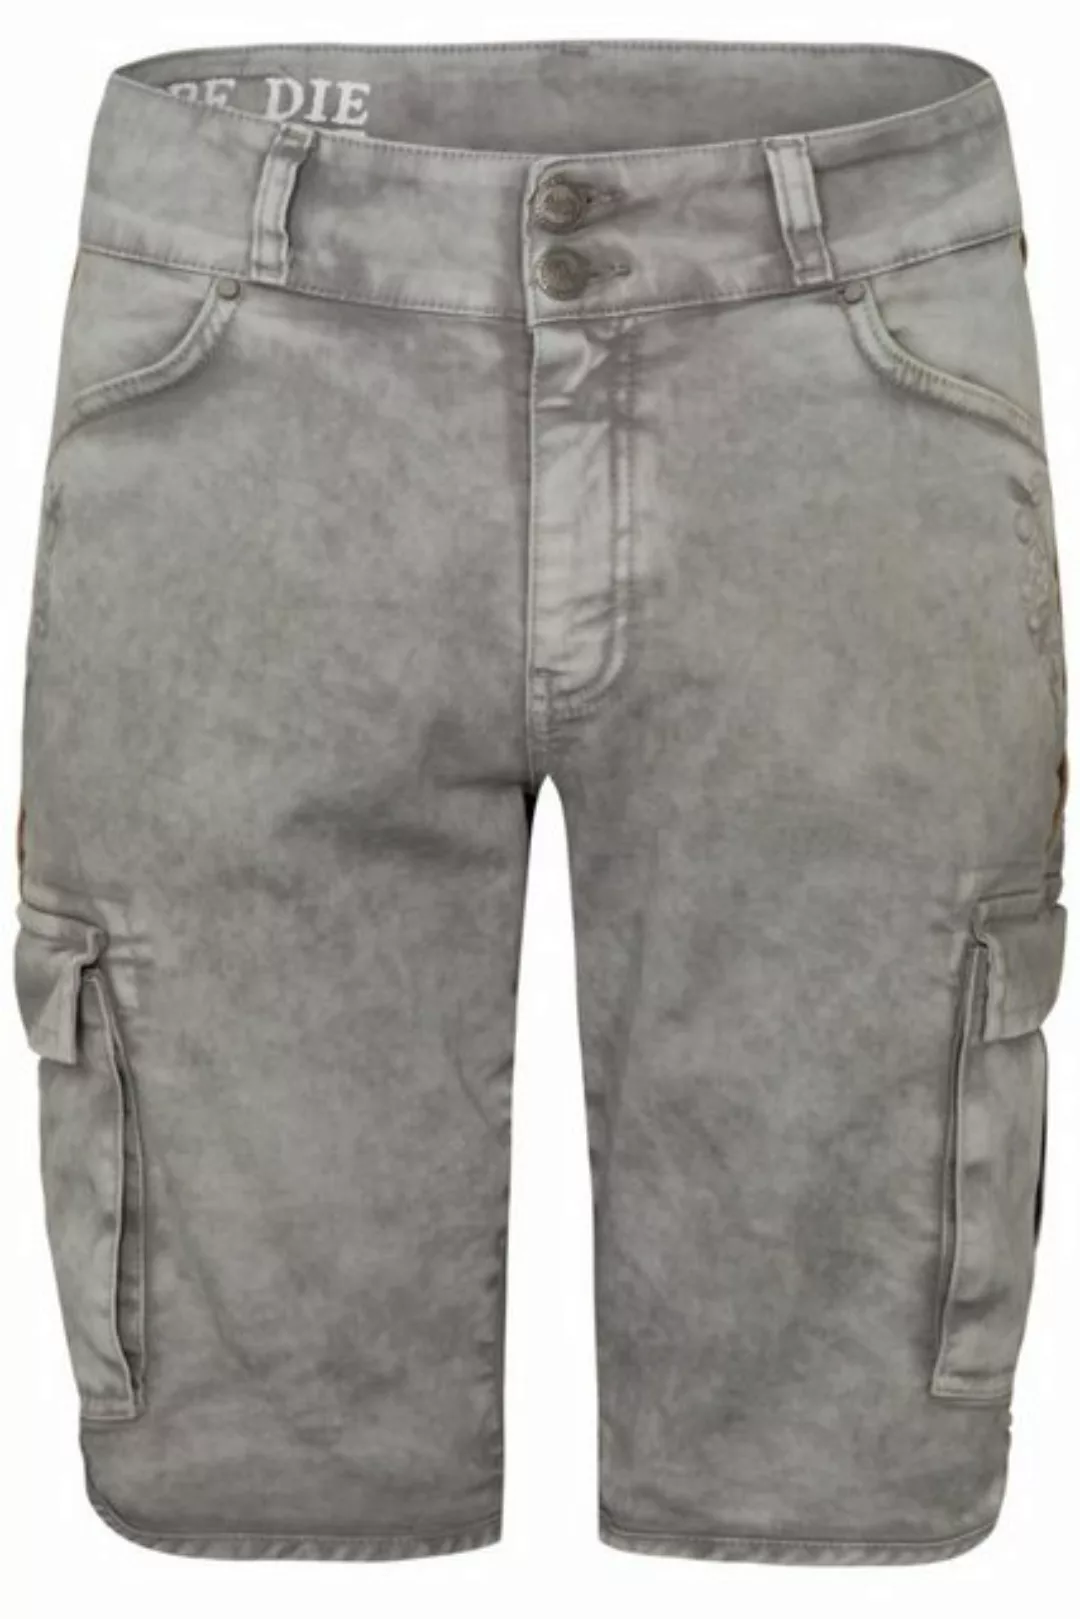 Hangowear Trachtenjeans Jeans Bermuda Herren - HECTOR CARGO - hellgrau günstig online kaufen